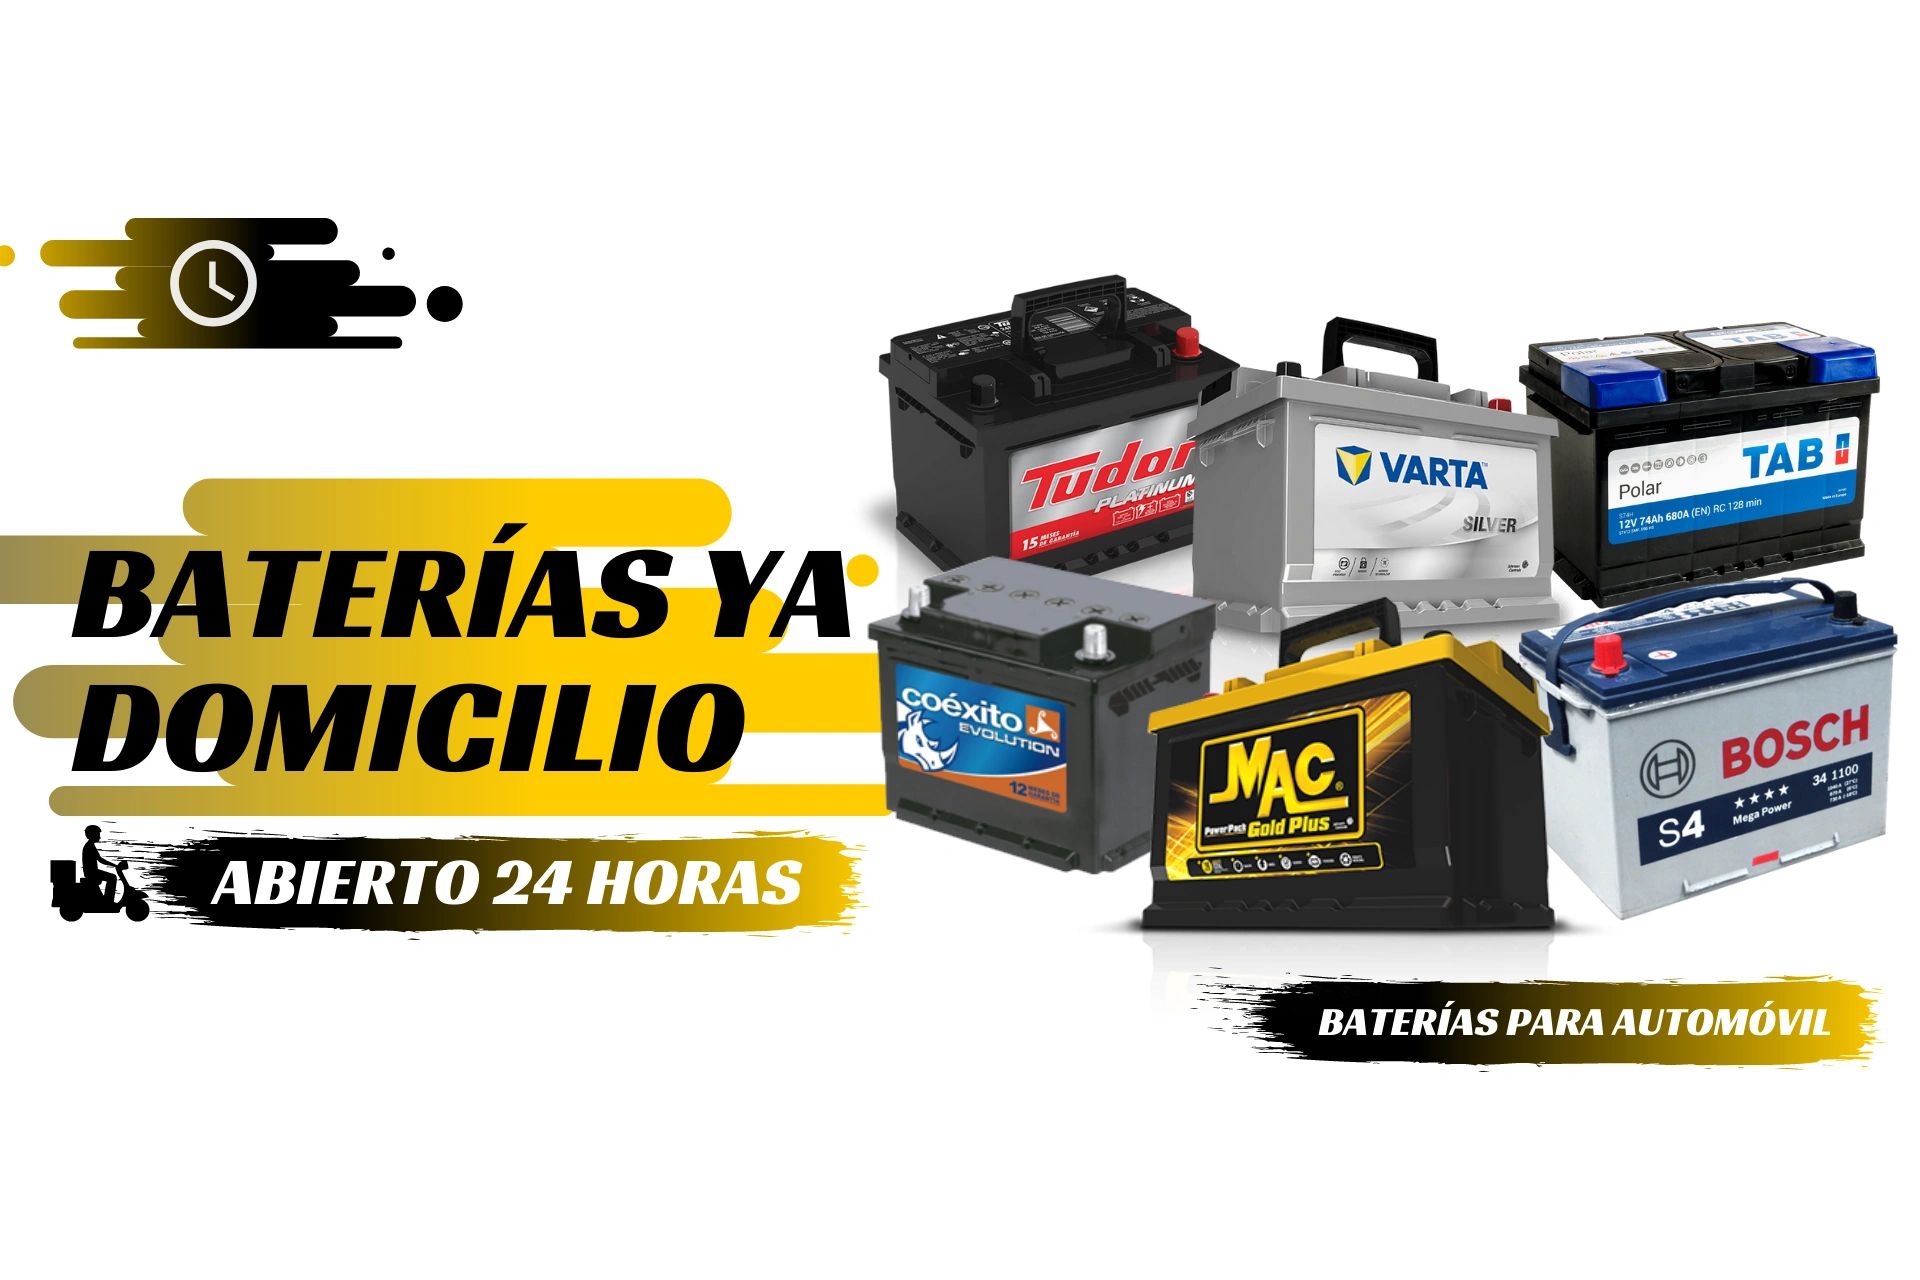 Baterías Ya Domicilio - Baterias Para Carro, Domicilio Gratis